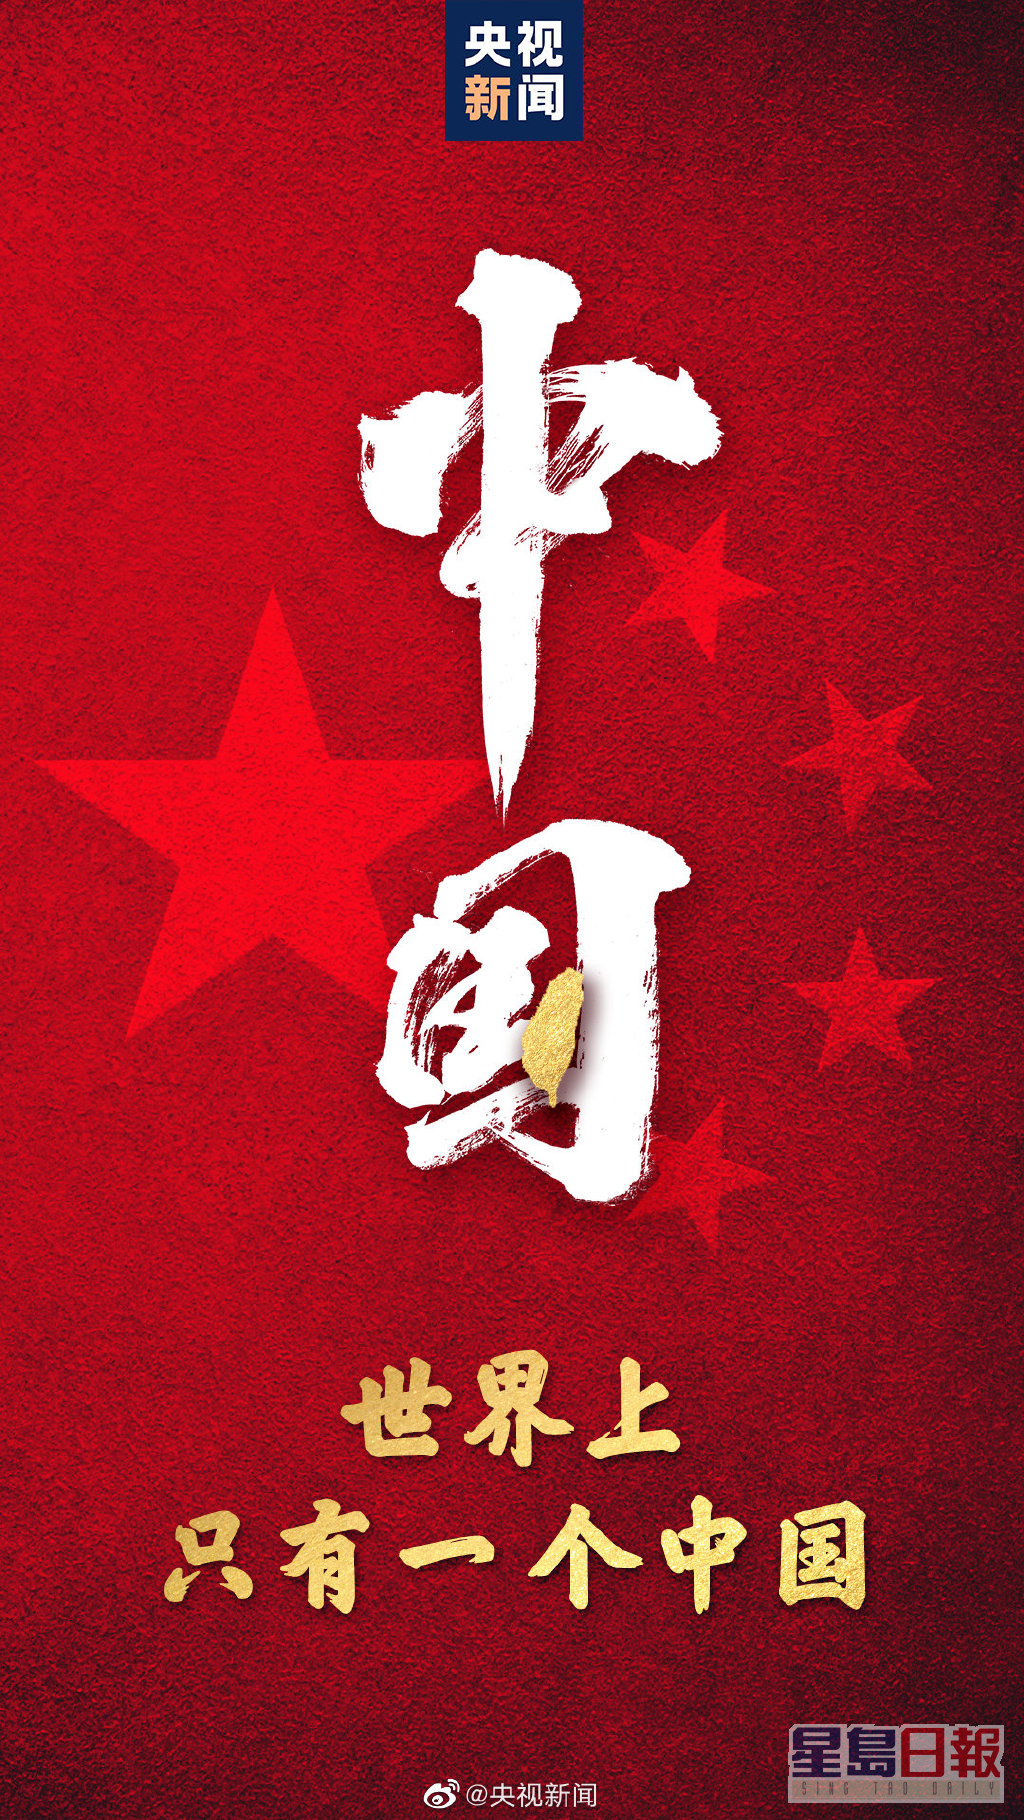 蕭敬騰被發現沒有轉發「只有一個中國」的貼文。